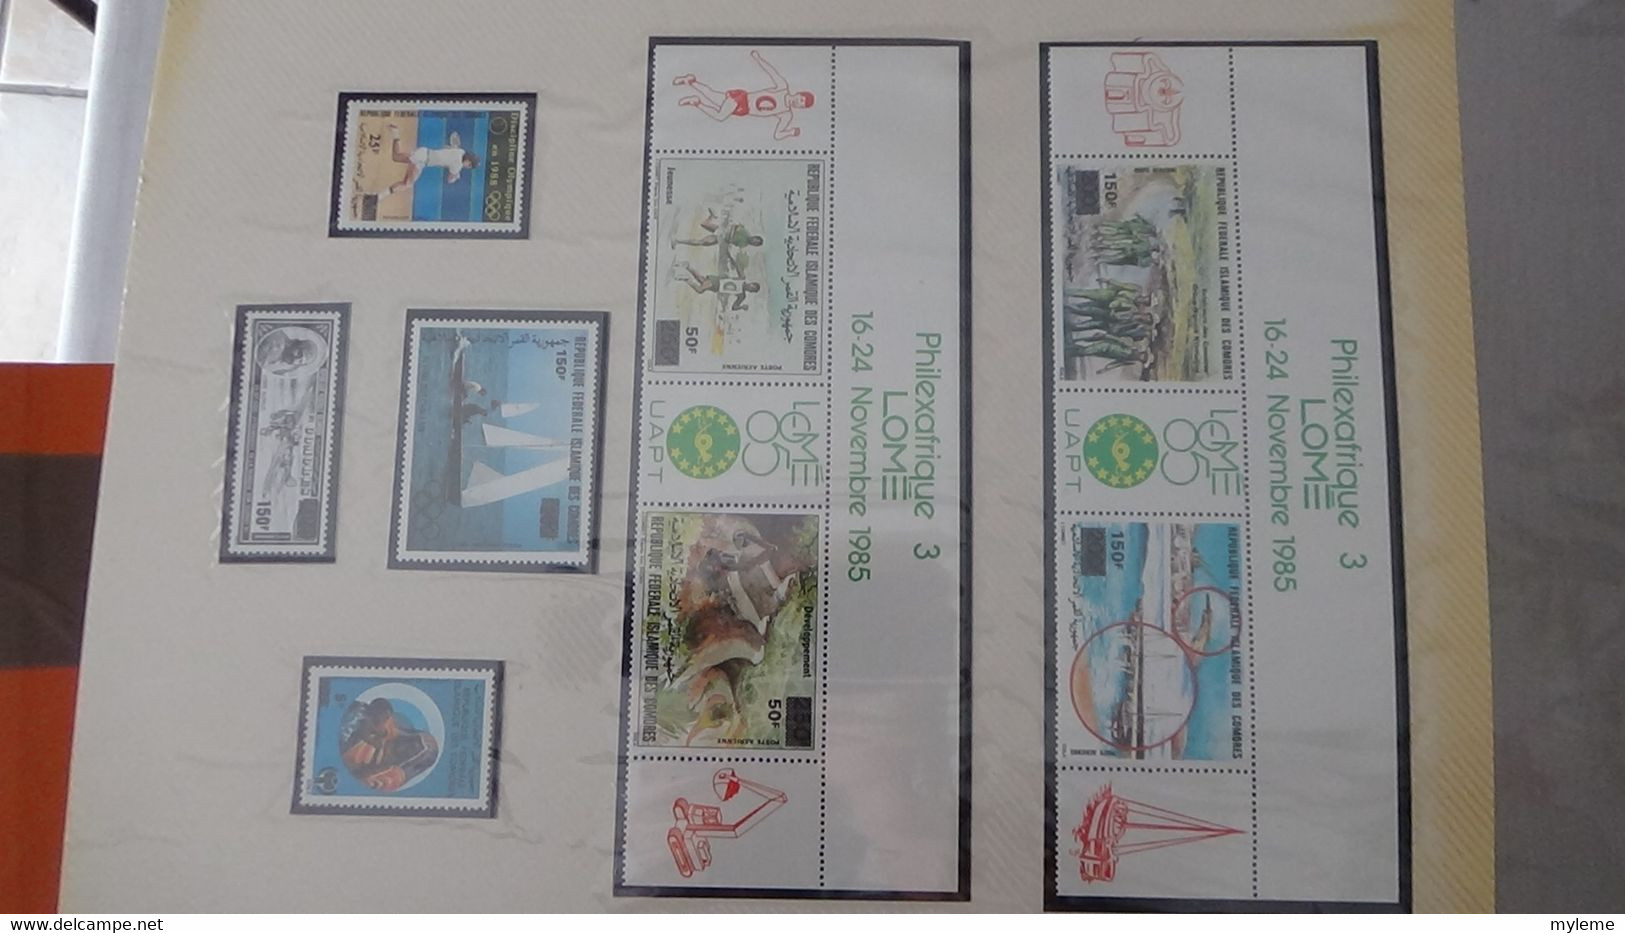 L21 Très belle collection Afrique dont Benin, Cameroun, Centrafrique et Comores en timbres et blocs ** A saisir !!!